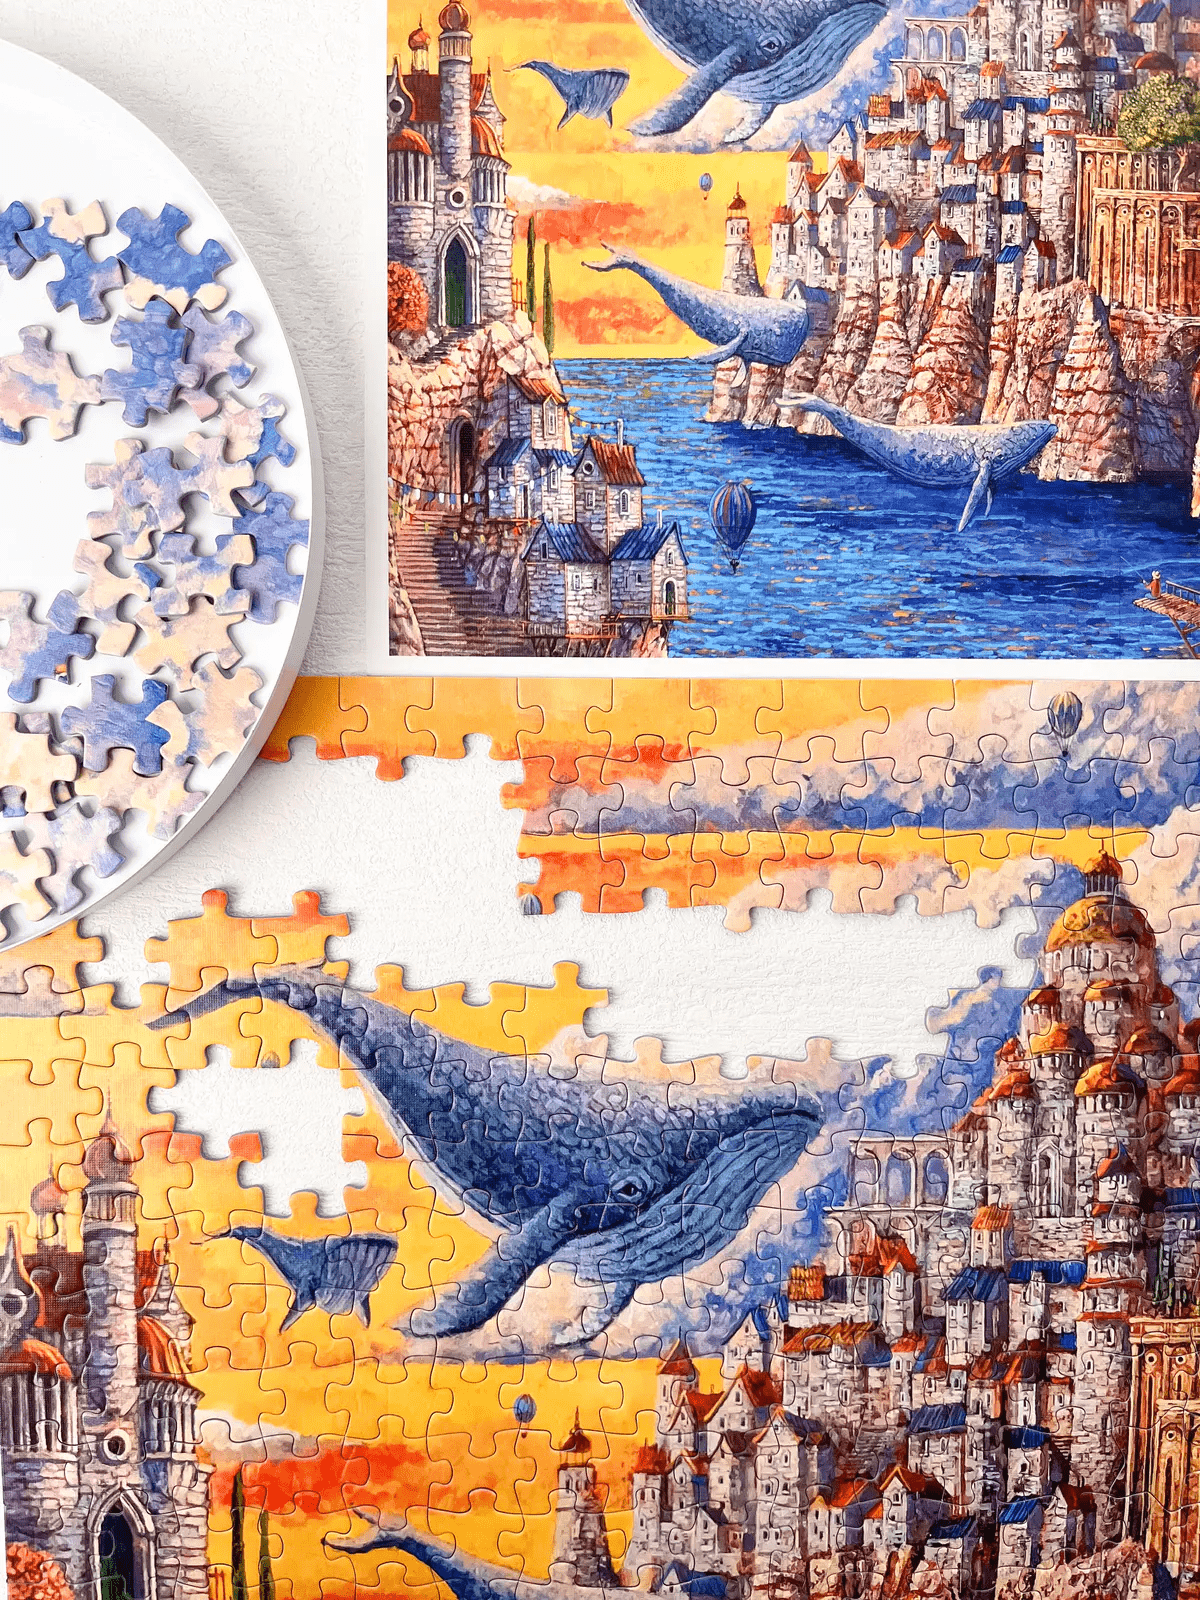 TOI图益 | 人文风景系列拼图《岛的鲸》波兰艺术家的中国艺术